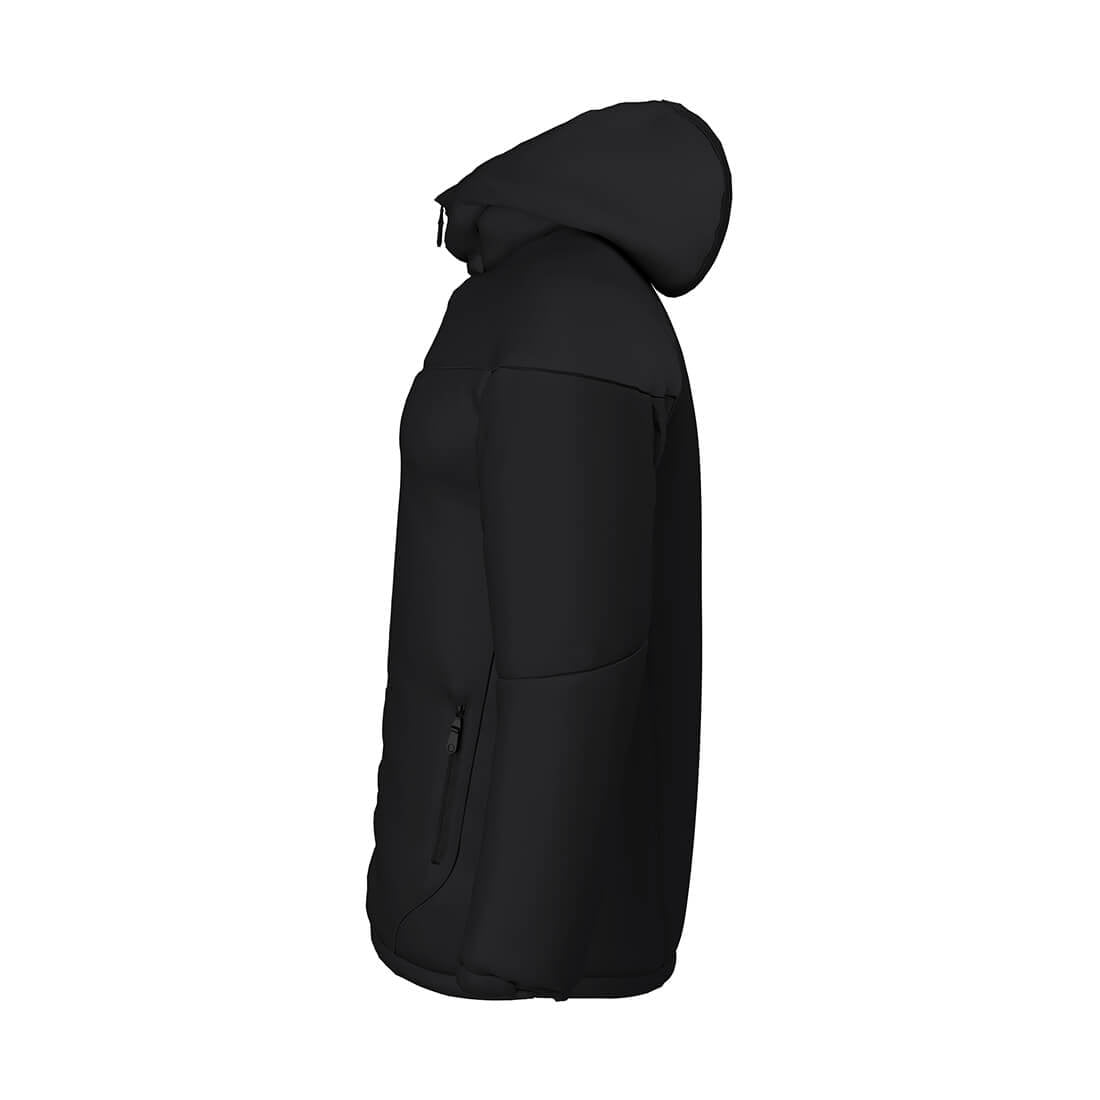 ZING Sportswear Sideline Jacket | Training Kit and Teamwear - Side Black